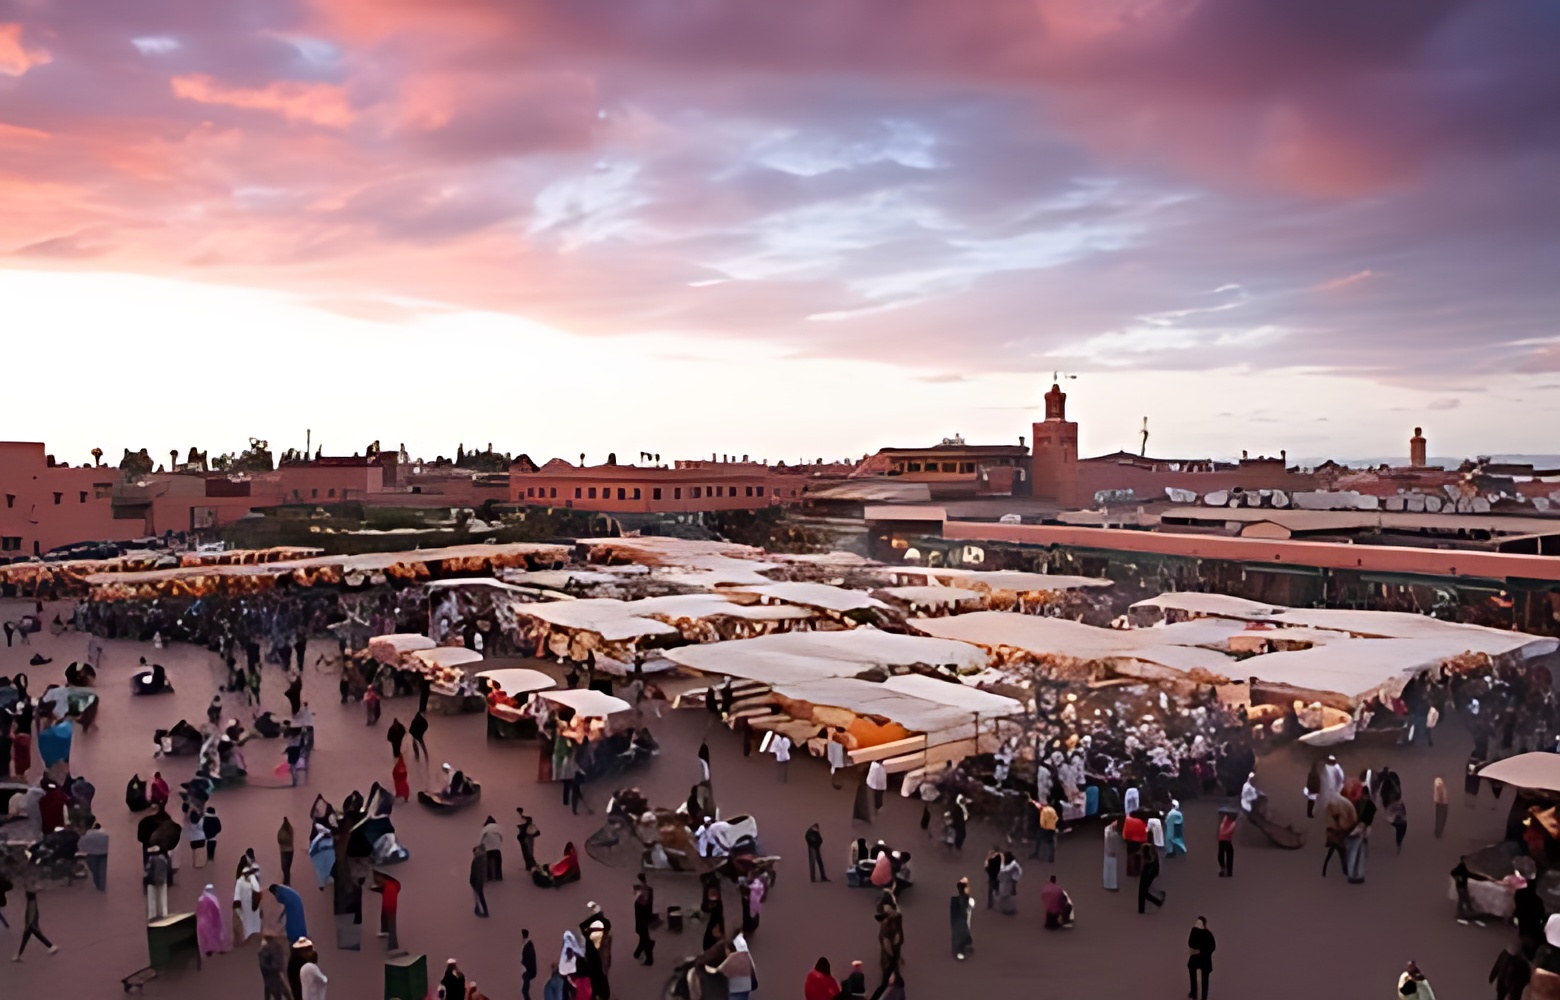 Marrakech activities